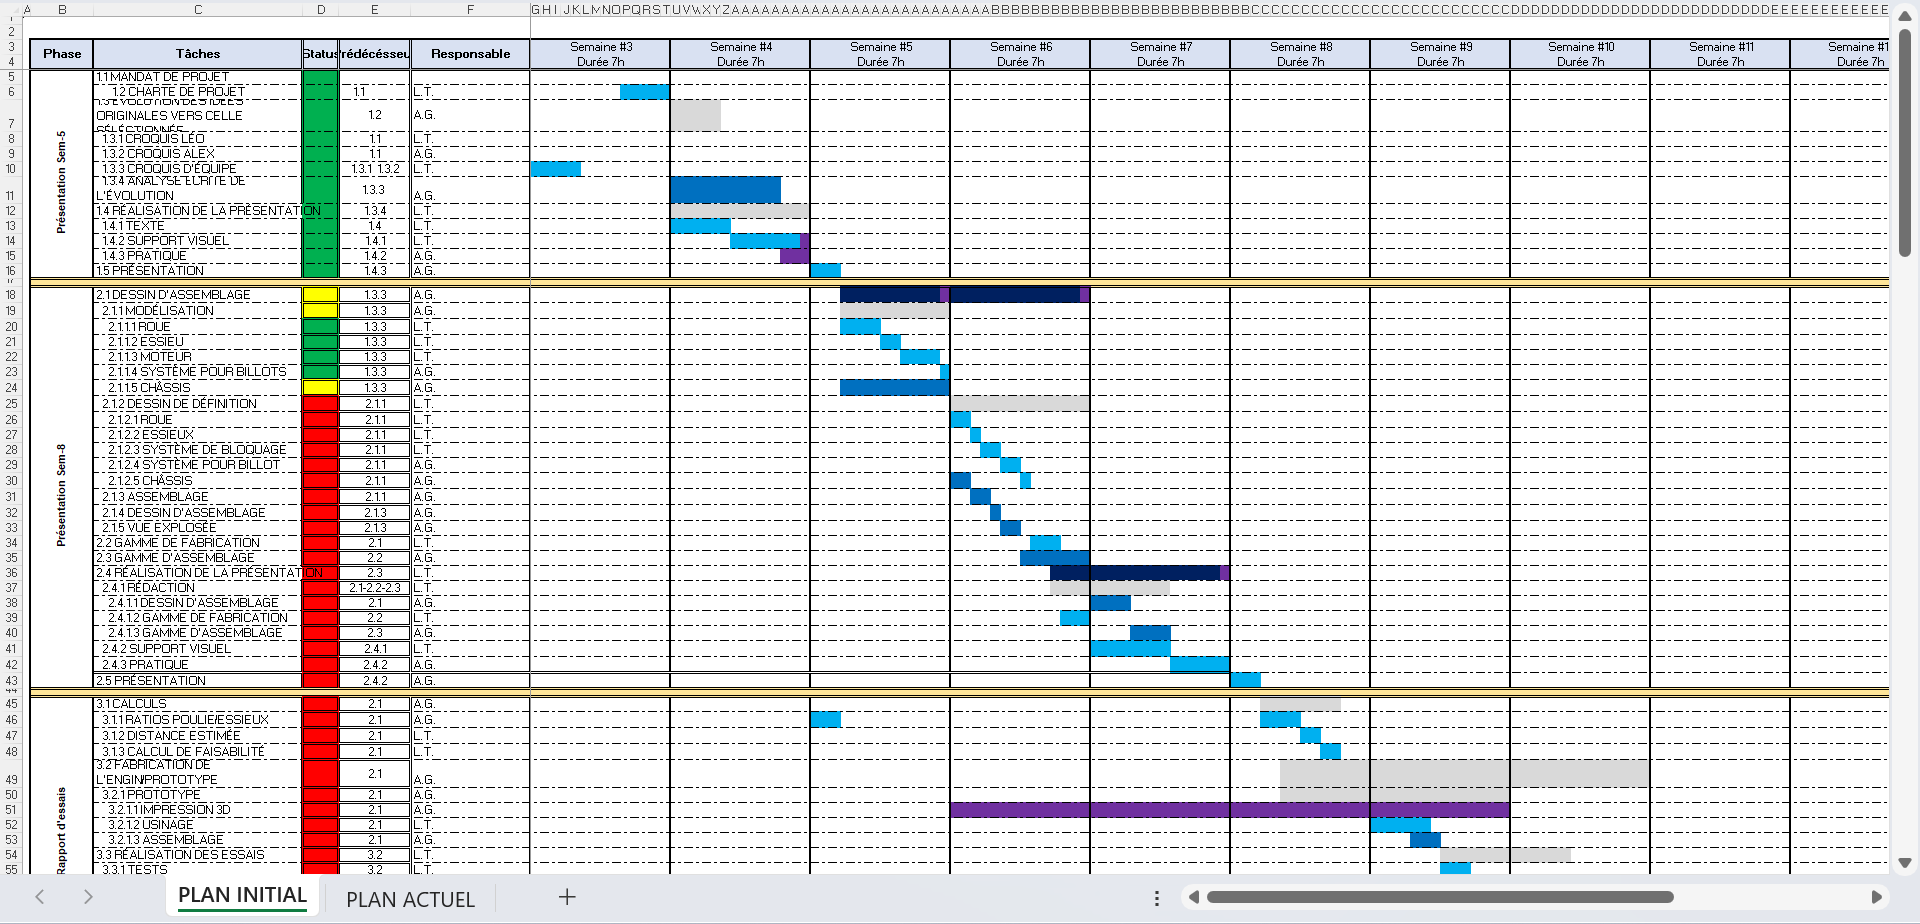 Capture d’écran d’une partie d’un classeur Excel. Des tâches sont listées dans une colonne à gauche. Sur l’une des lignes du haut, les semaines du cours sont numérotées, chacune étant divisée en 14 unités correspondant chacune à 30 minutes. Puis, pour chaque tâche, des cellules sont colorées dans les colonnes correspondant aux moments où la tâche sera effectuée (par exemple, si une tâche sera faite en 4 heures à la semaine 6, 8 cases parmi les 14 de la semaine 6 sont colorées). Les tâches sont classées en ordre chronologique, ce qui fait que les cases colorées forment une bande diagonale, du haut à gauche vers le bas à droite. Une autre colonne contient les initiales de la personne responsable de chaque tâche.